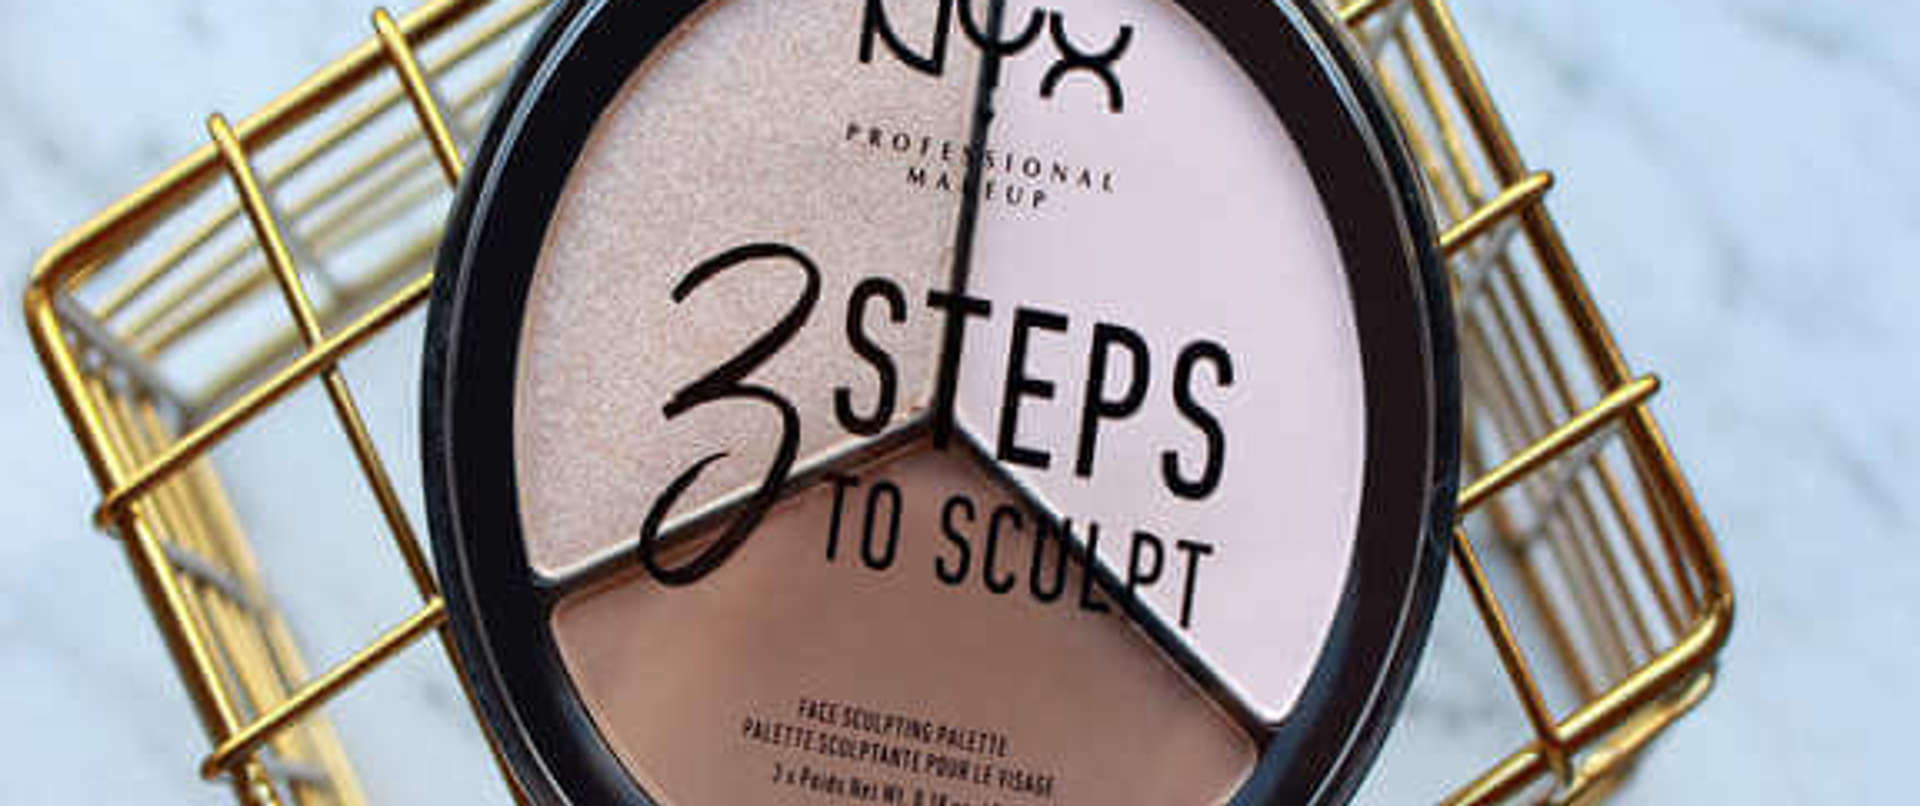 Deniyoruz: NYX Professional Makeup 3 Steps to Sculpt Kontür Paleti